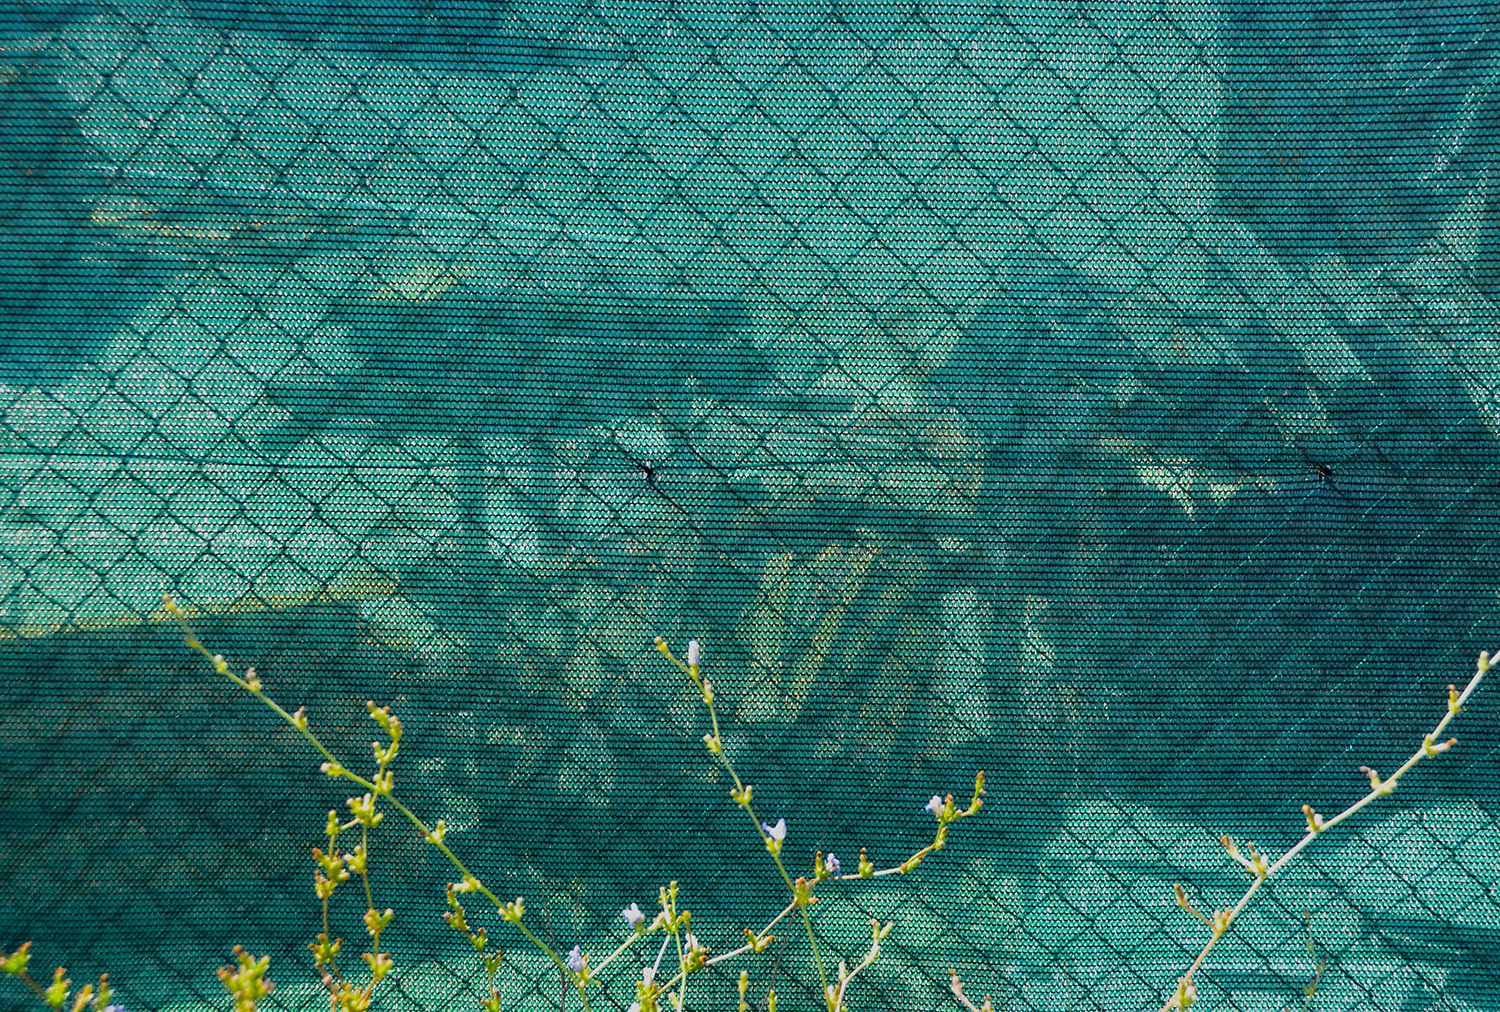 x Loop 9 image 1 Summer 2012 Santini lumber yard behind wire and green mesh.jpg